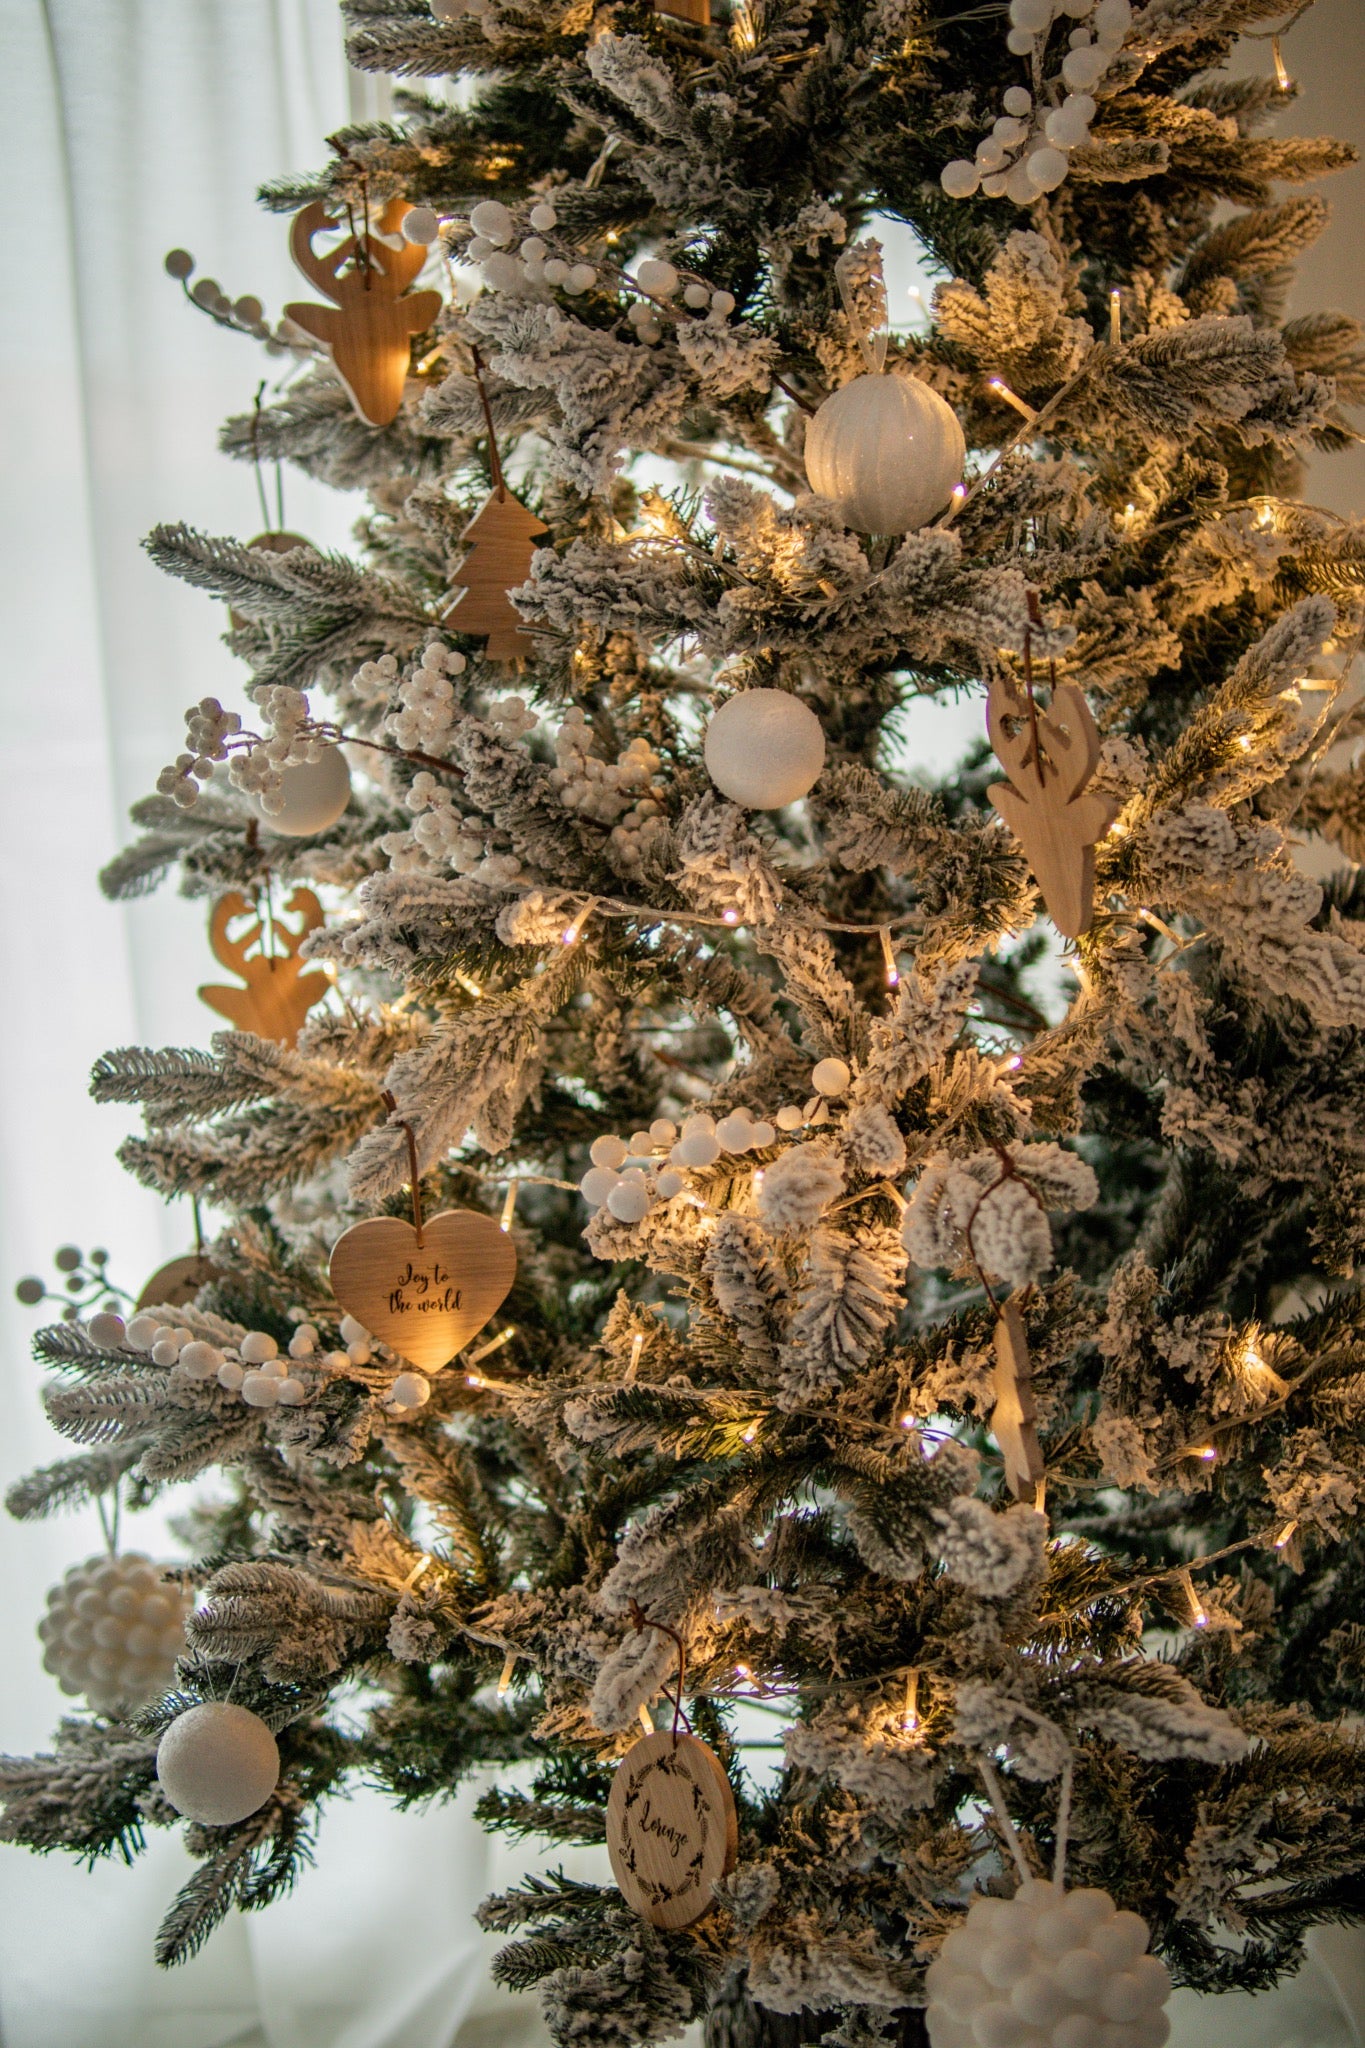 Decorazione per albero in legno di rovere tonda “Merry Christmas”